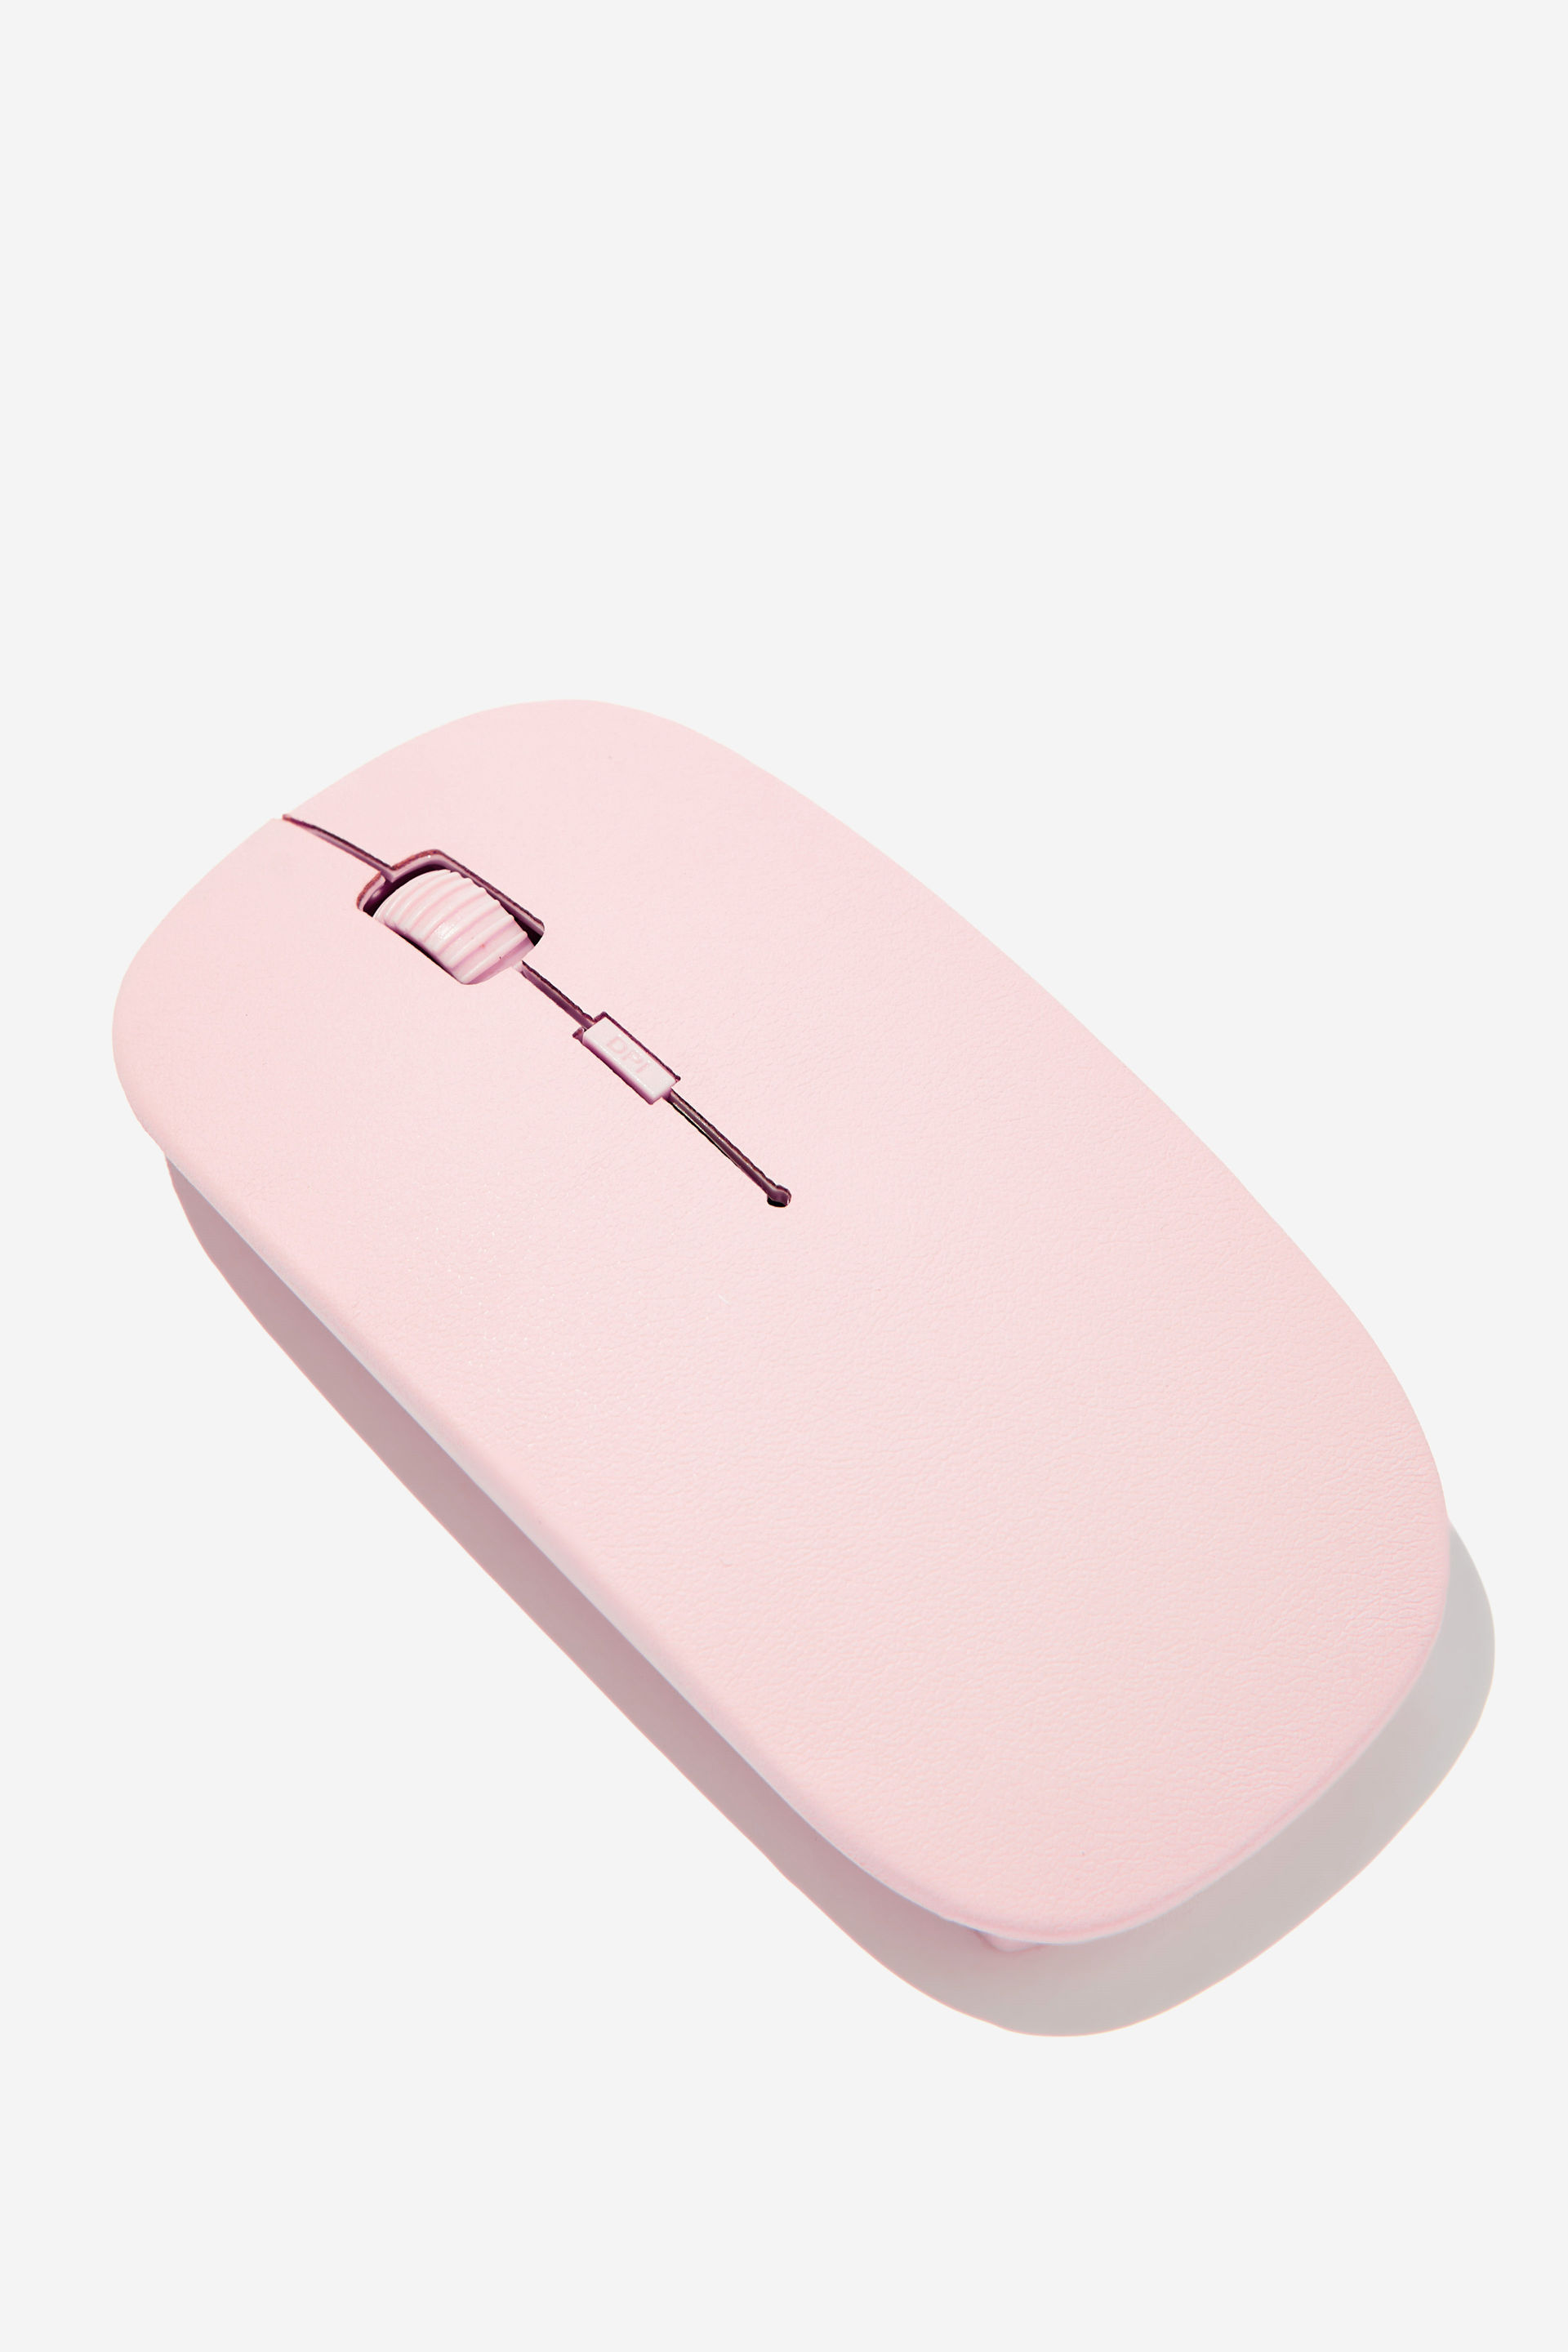 Typo - Wireless Mouse - Ballet blush